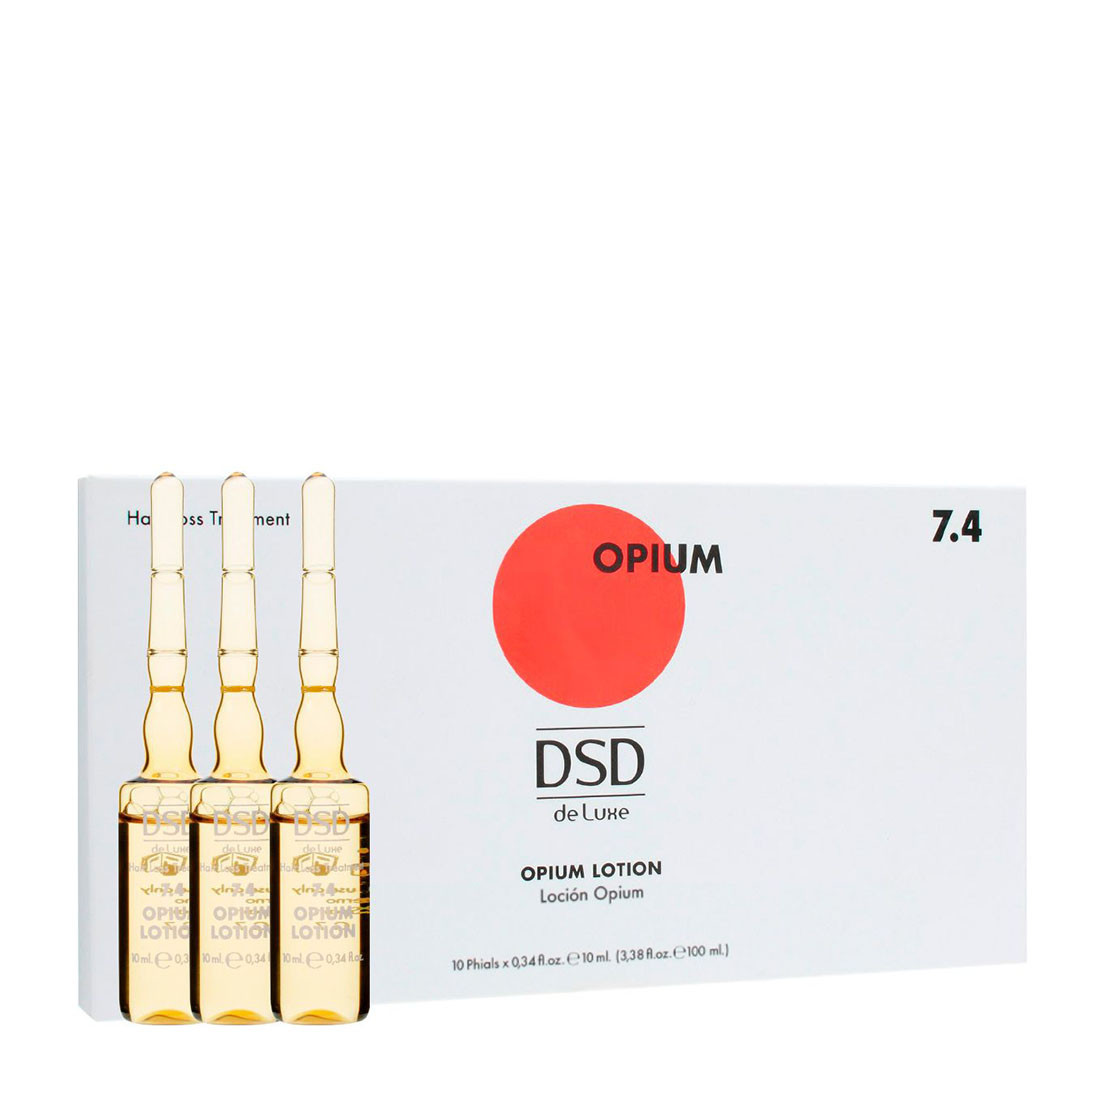 Отзывы о DSD de Luxe Opium 7.4 - Опиум Лосьон для волос